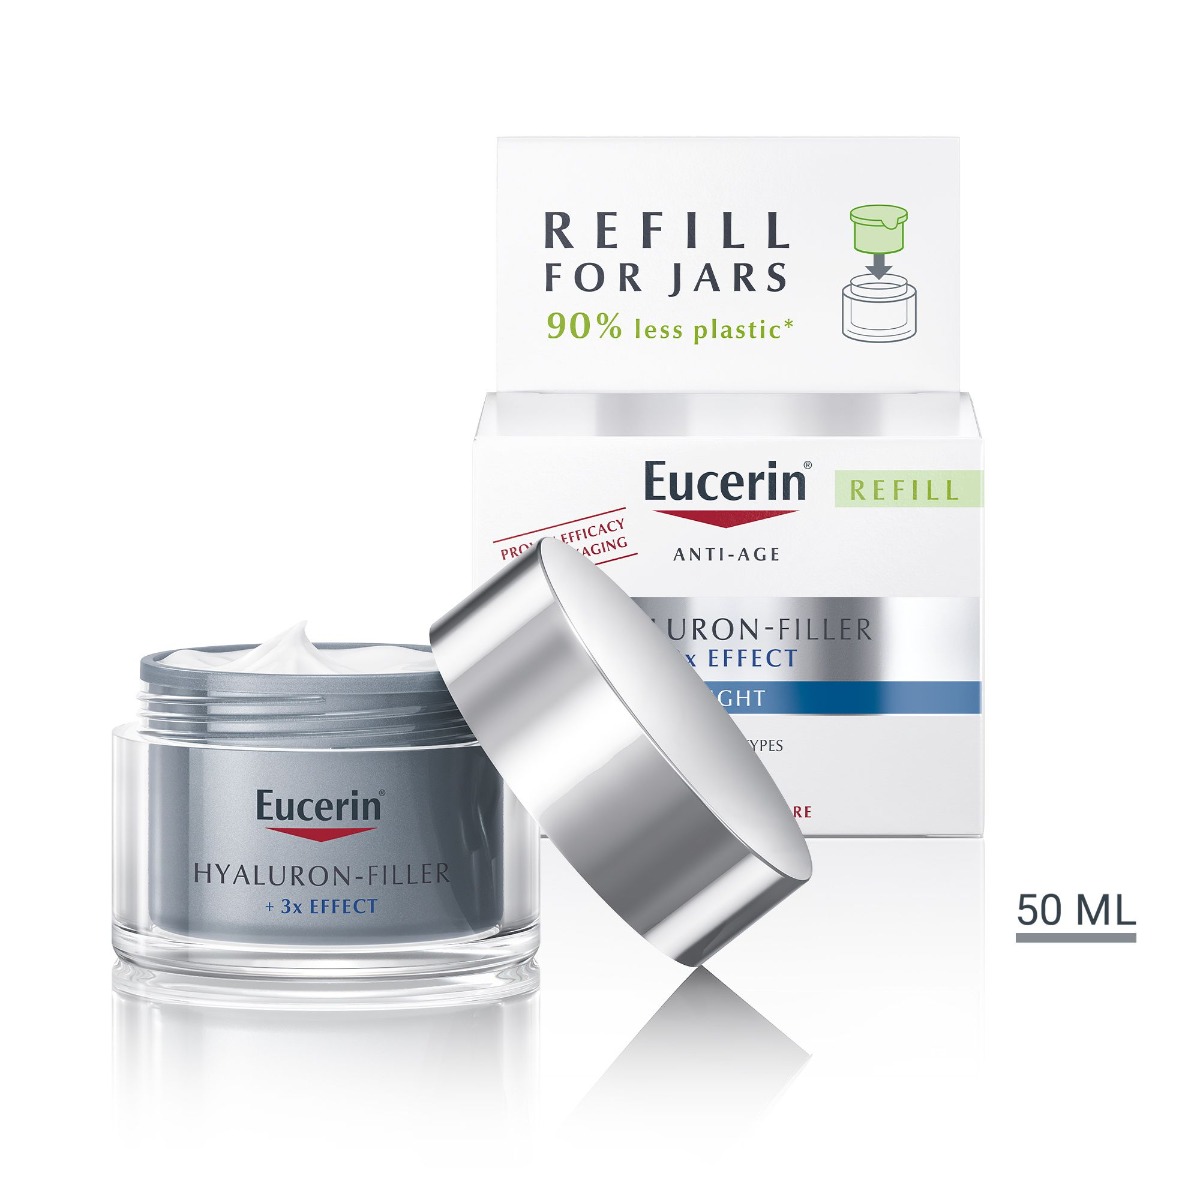 Eucerin Hyaluron-Filler + 3x Effect noční krém refill 50 ml Eucerin